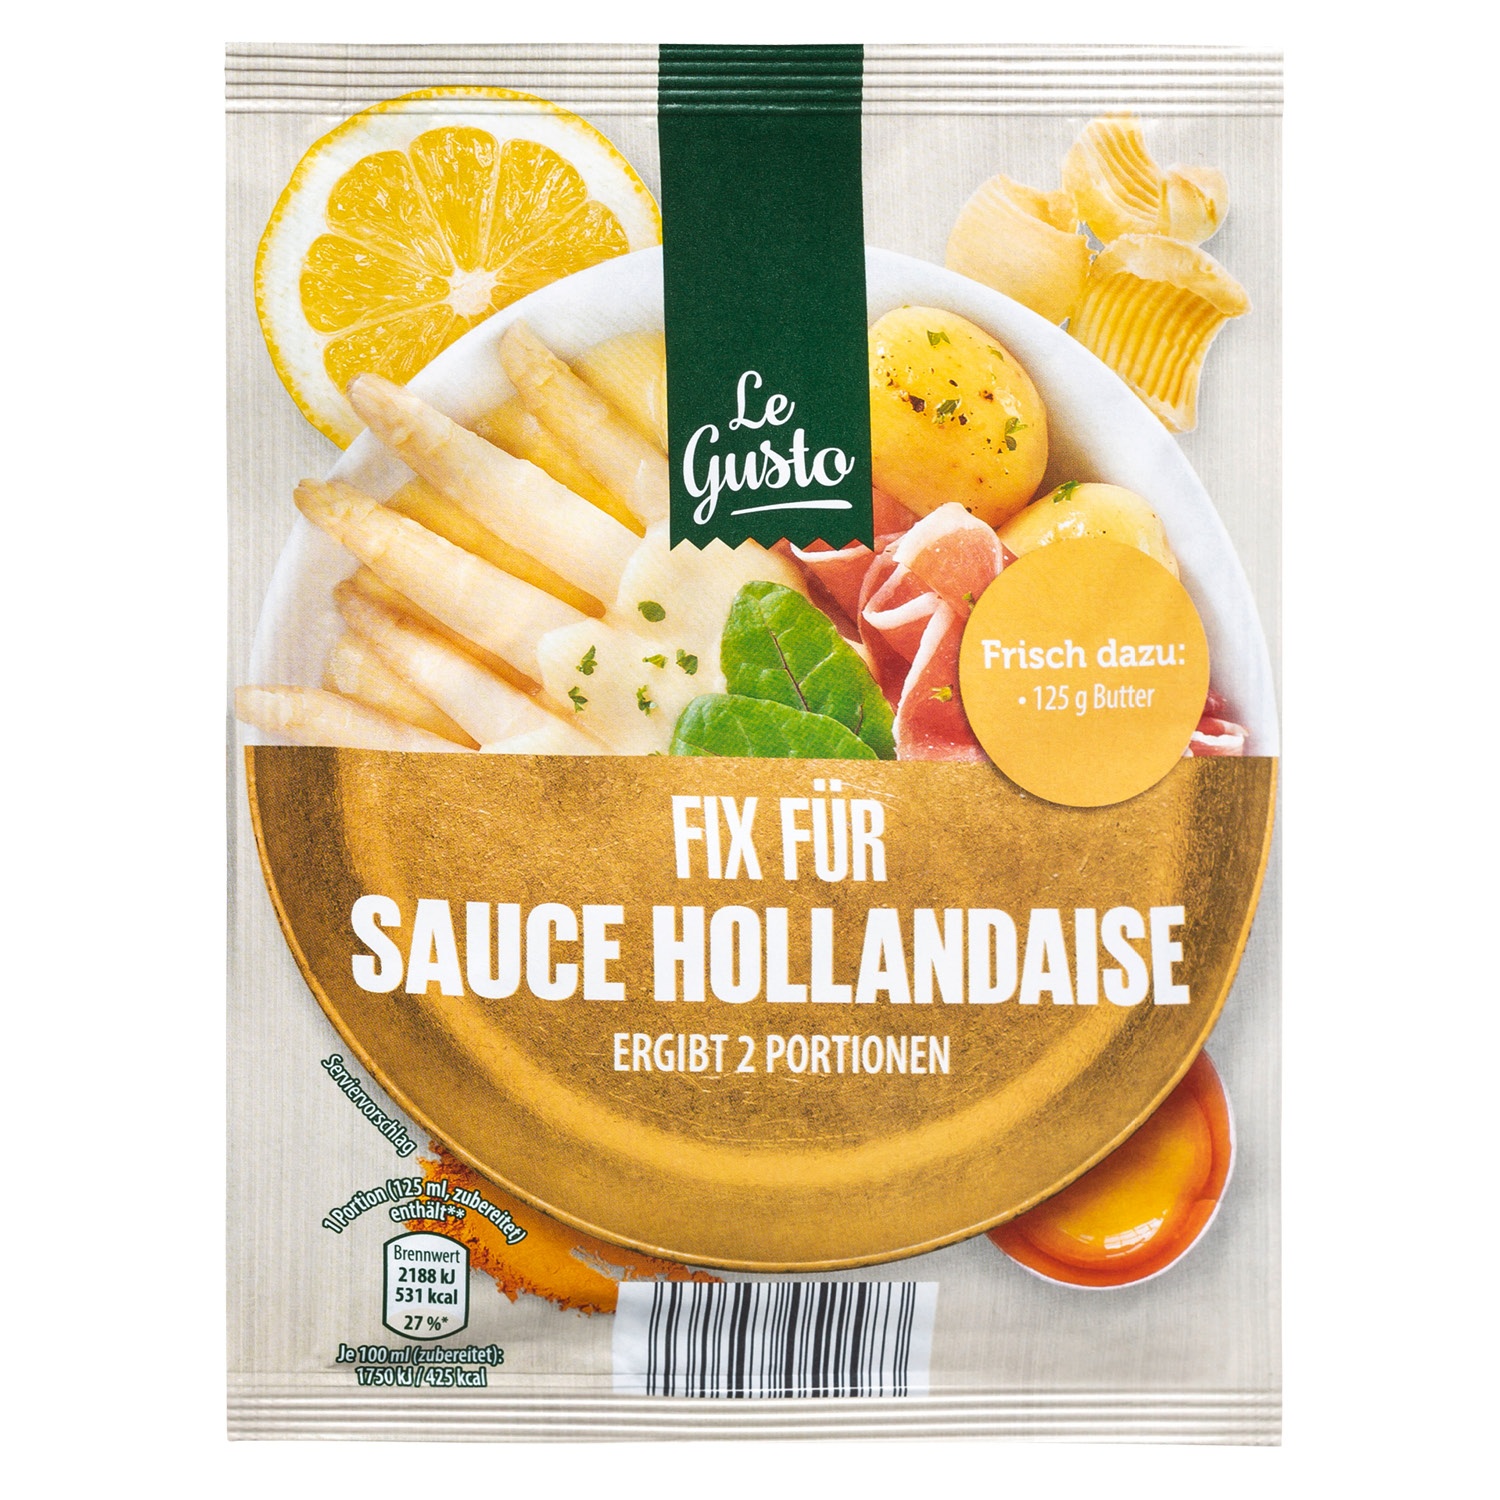 Le Gusto Fix für Sauce Hollandaise 27 g